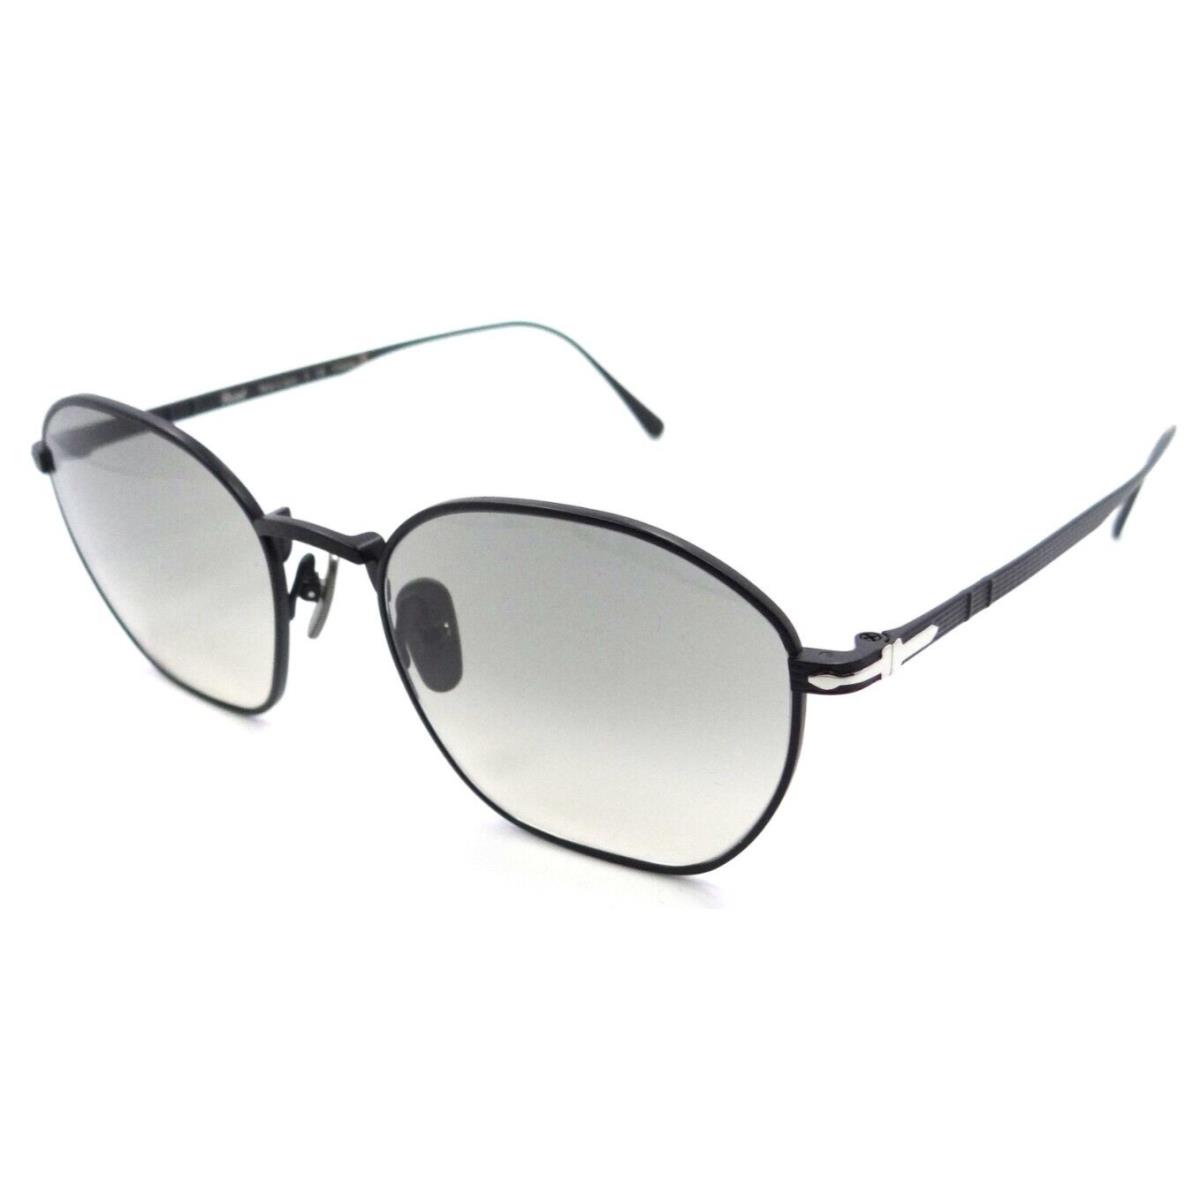 Persol Sunglasses PO 5004ST 8004/32 50-19-145 Matte Black / Grey Gradient Japan